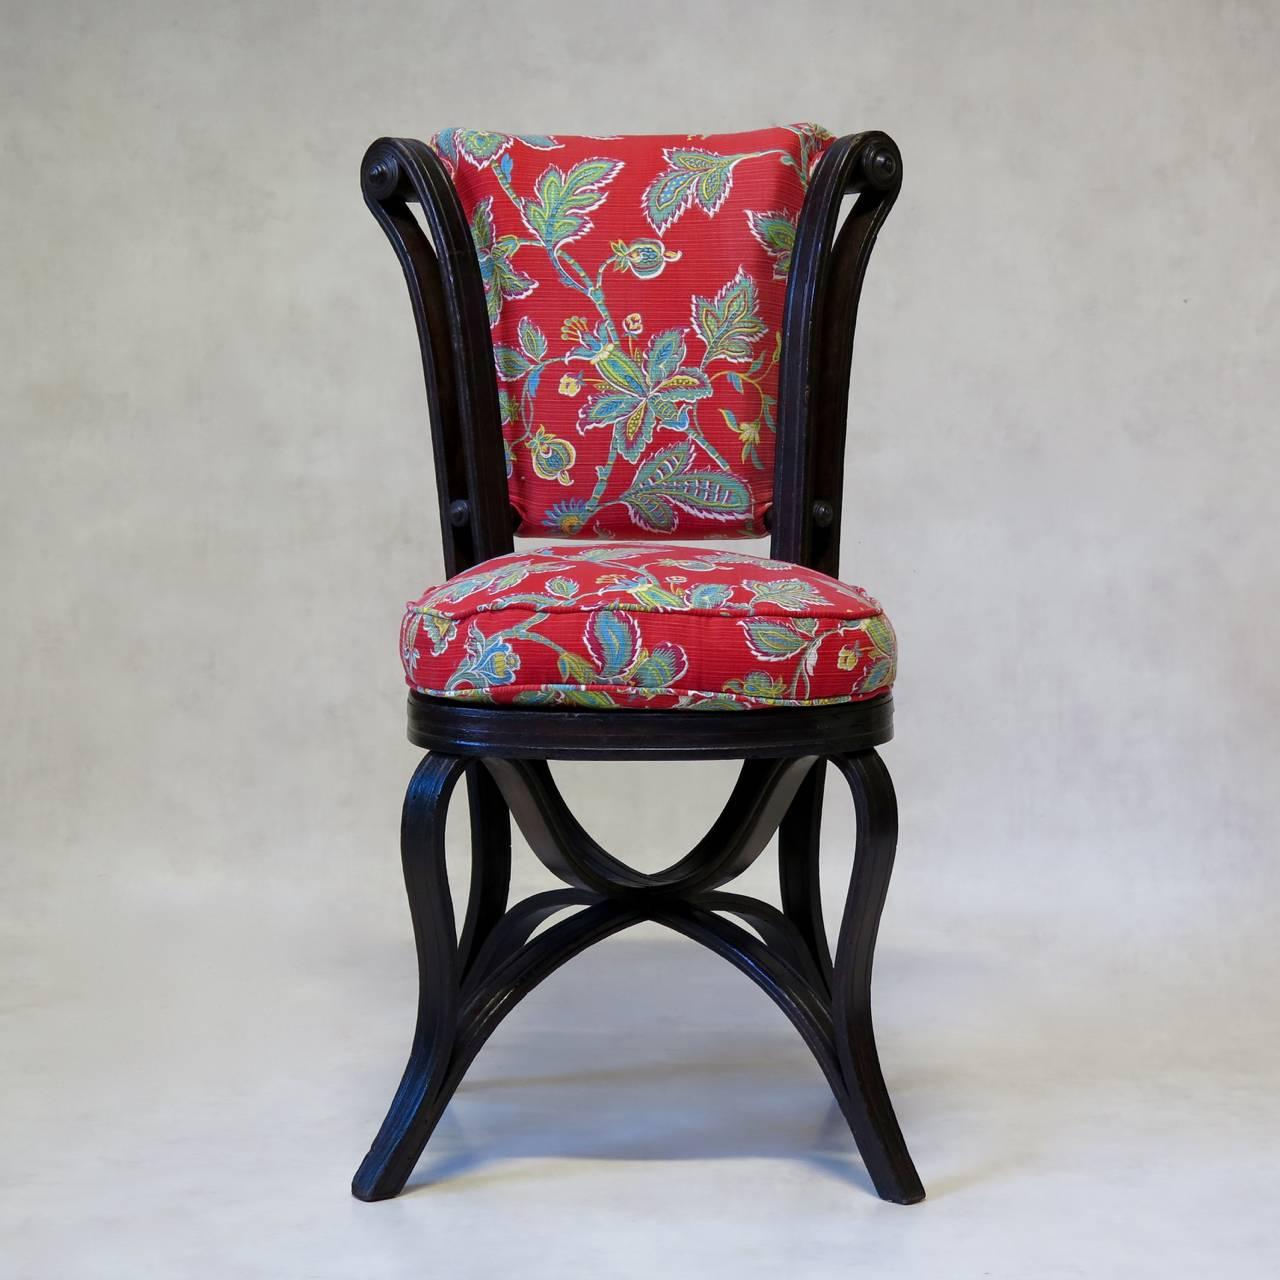 Rare et charmante paire de chaises anciennes en bois courbé, probablement par Thonet. 
La conception de la chaise est ingénieuse et crée un mouvement fluide et agréable : la chaise est conçue de telle sorte qu'une pièce de bois courbé part du pied